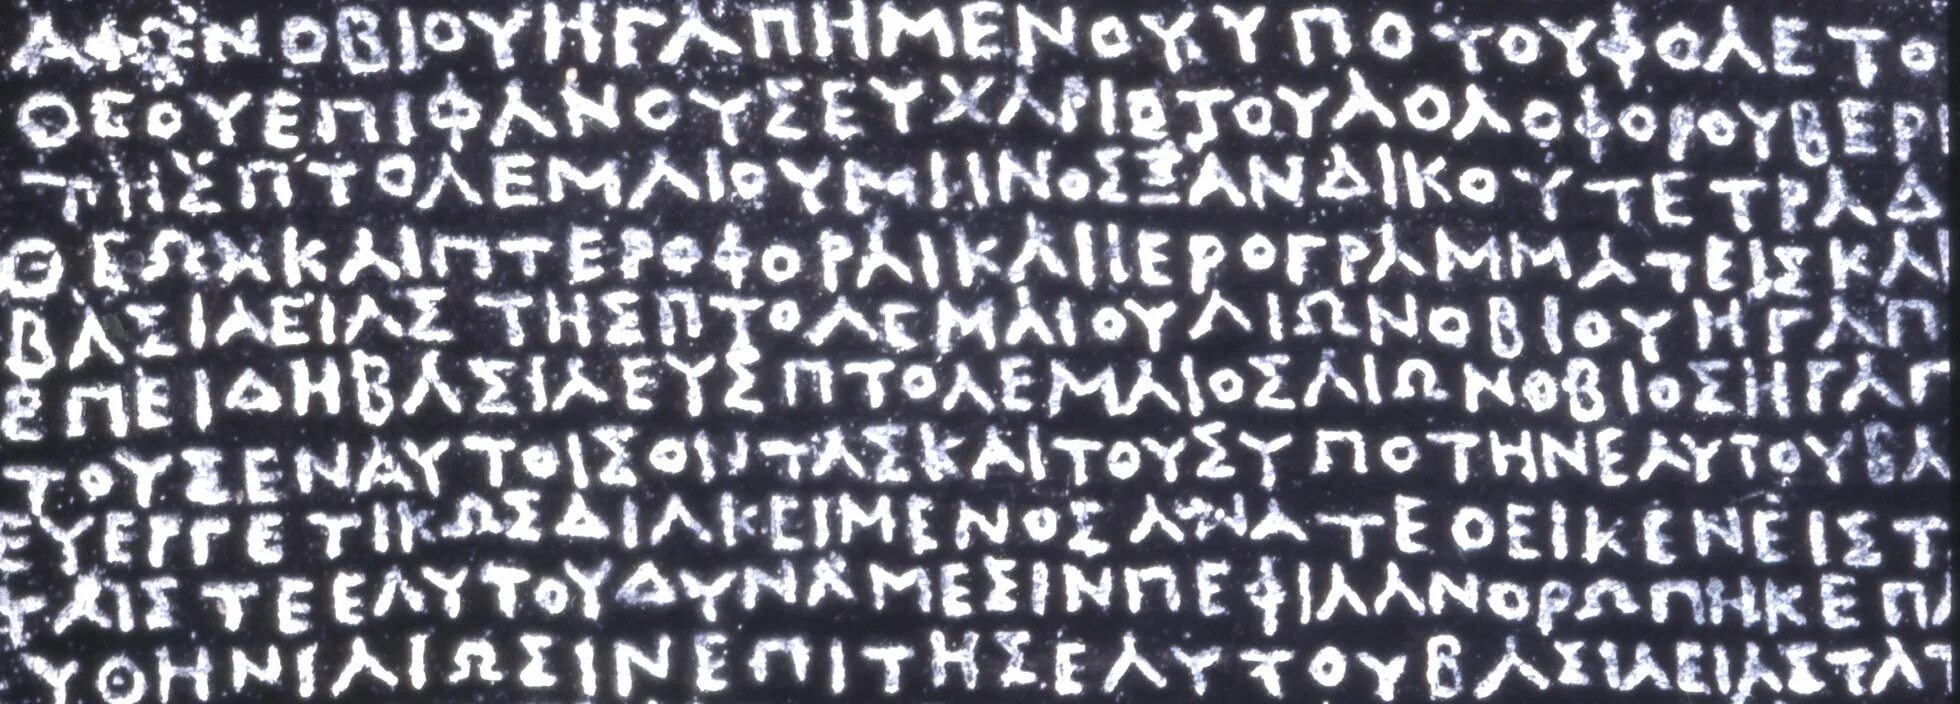 Много на греческом. Розеттский камень. Древнегреческий язык. Розеттской надписи. Греческий текст.